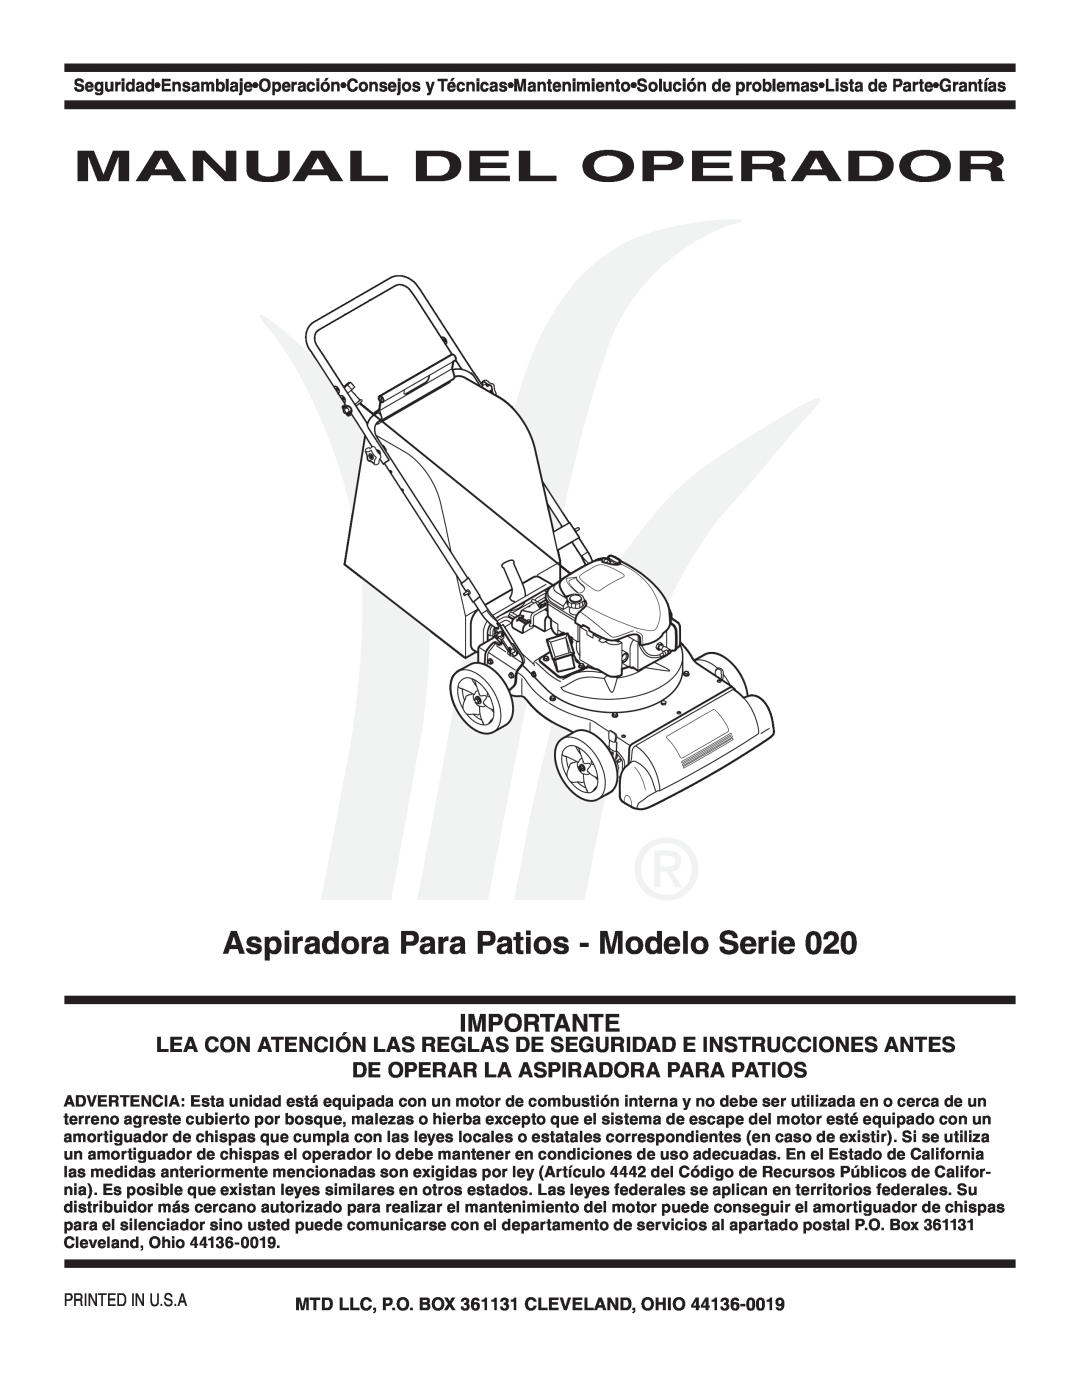 MTD Series 020 warranty Manual Del Operador, Aspiradora Para Patios - Modelo Serie, Importante 